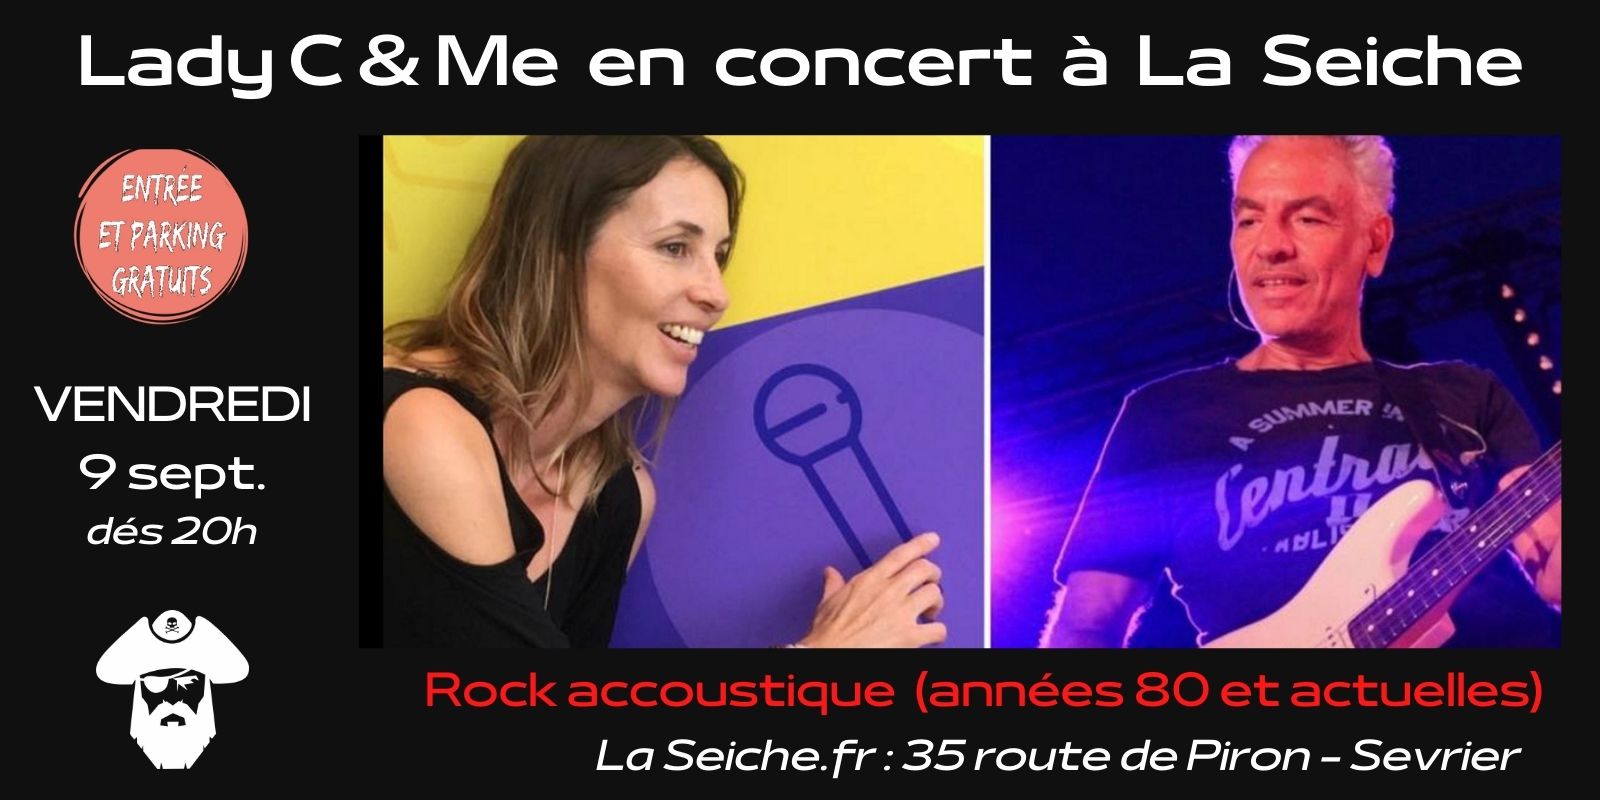 9 sept. Lady C & Me en concert à La Seiche. Rock acoustique années 80 et actuelles. Sevrier, Lac d'Anncy, Haute-Savoie.